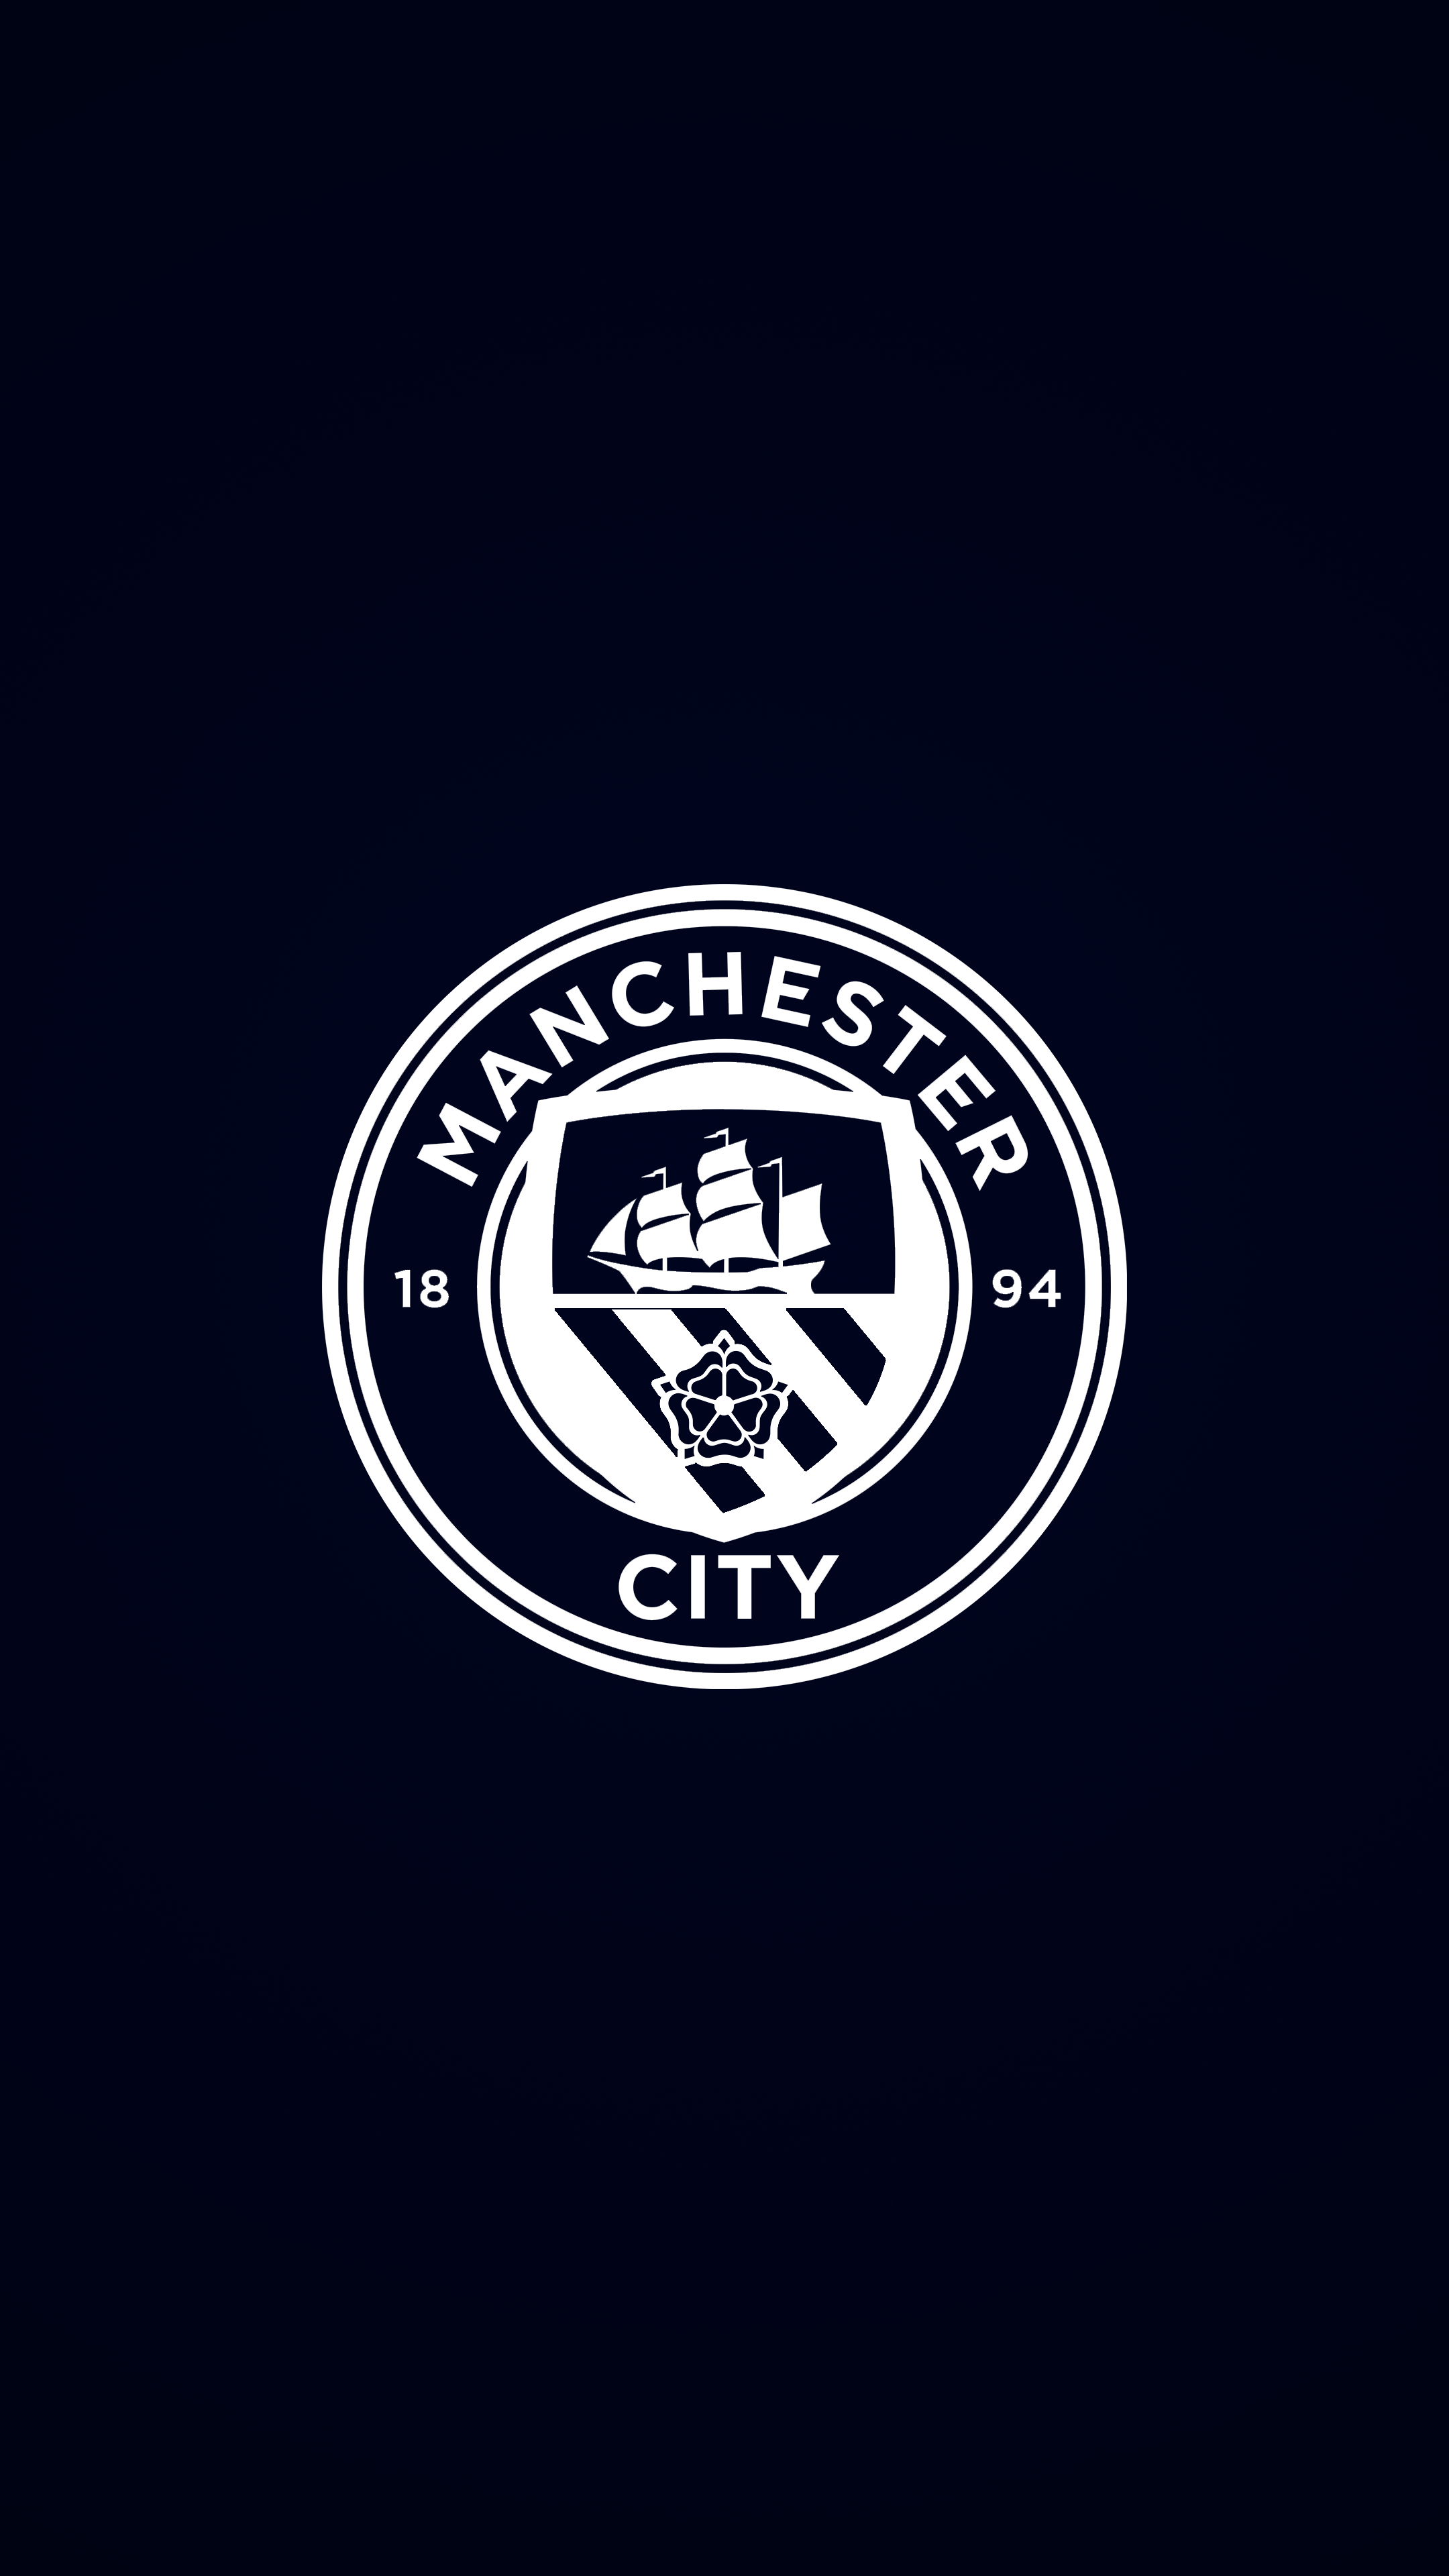 Man City ideas. manchester city wallpaper, manchester city, manchester city football club